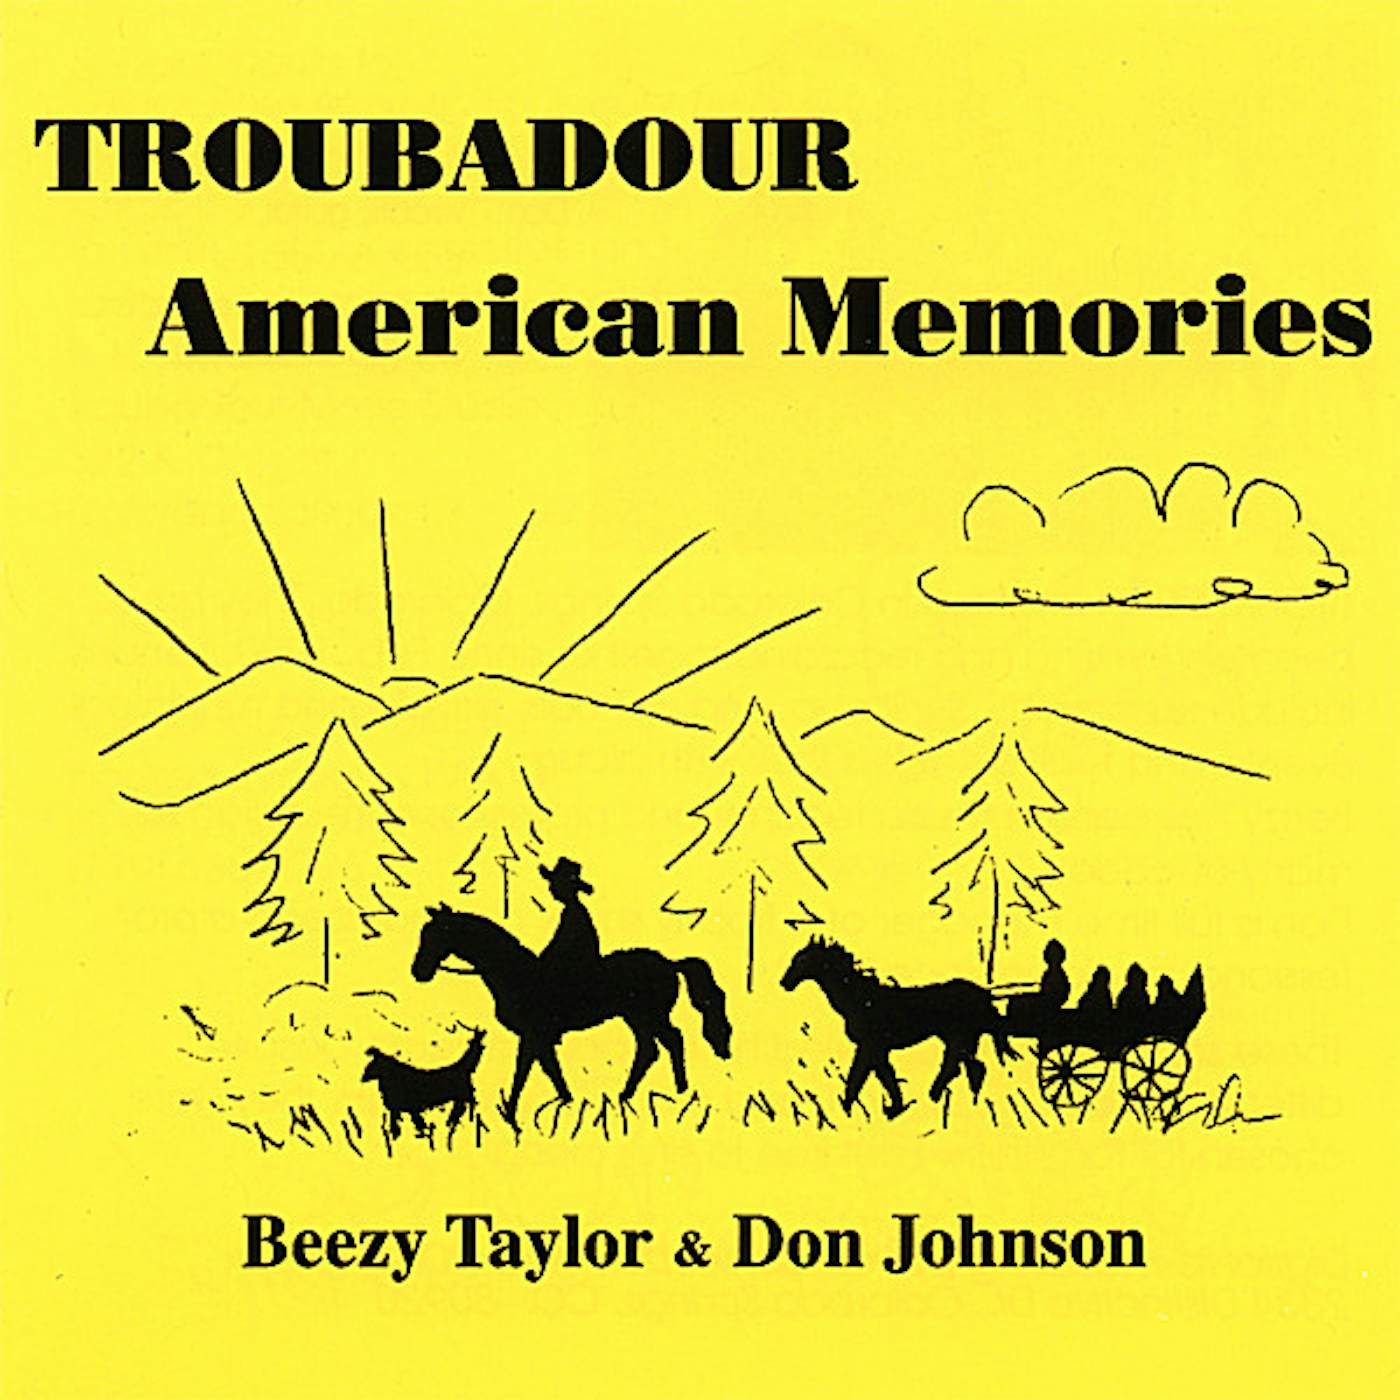 Troubadour AMERICAN MEMORIES CD